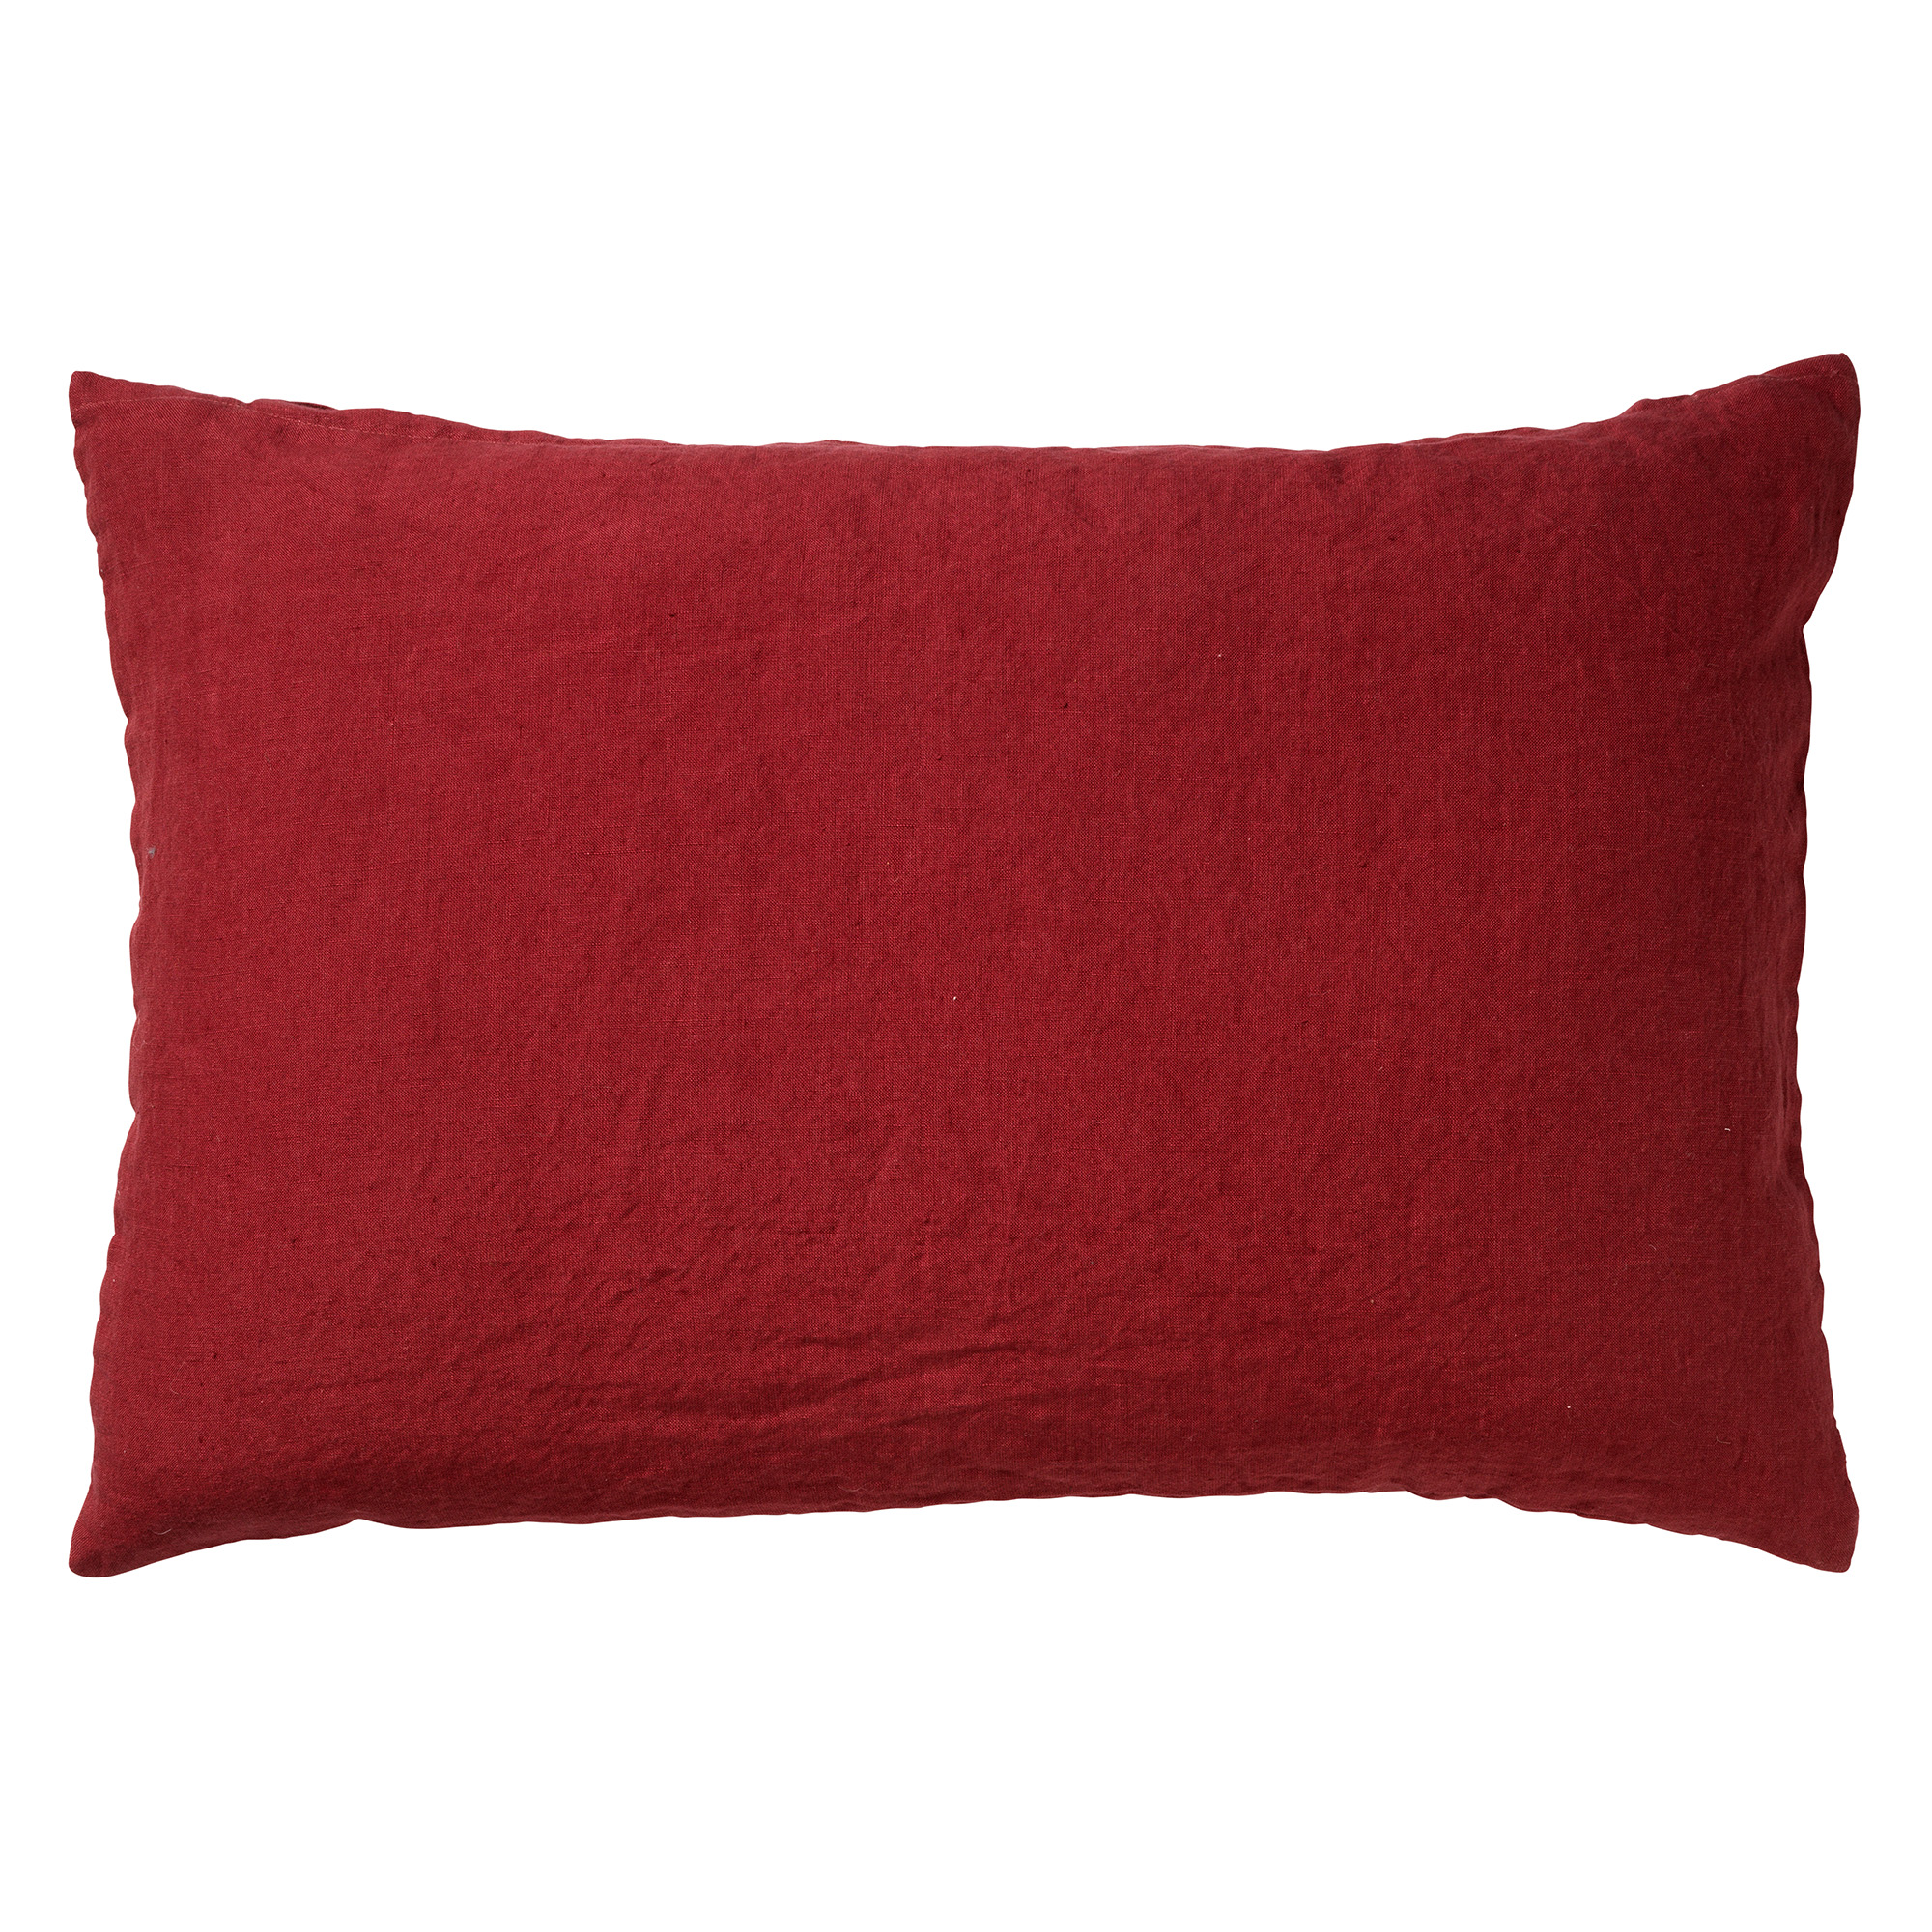 LINN - Sierkussen linnen Merlot 40x60 cm - rood